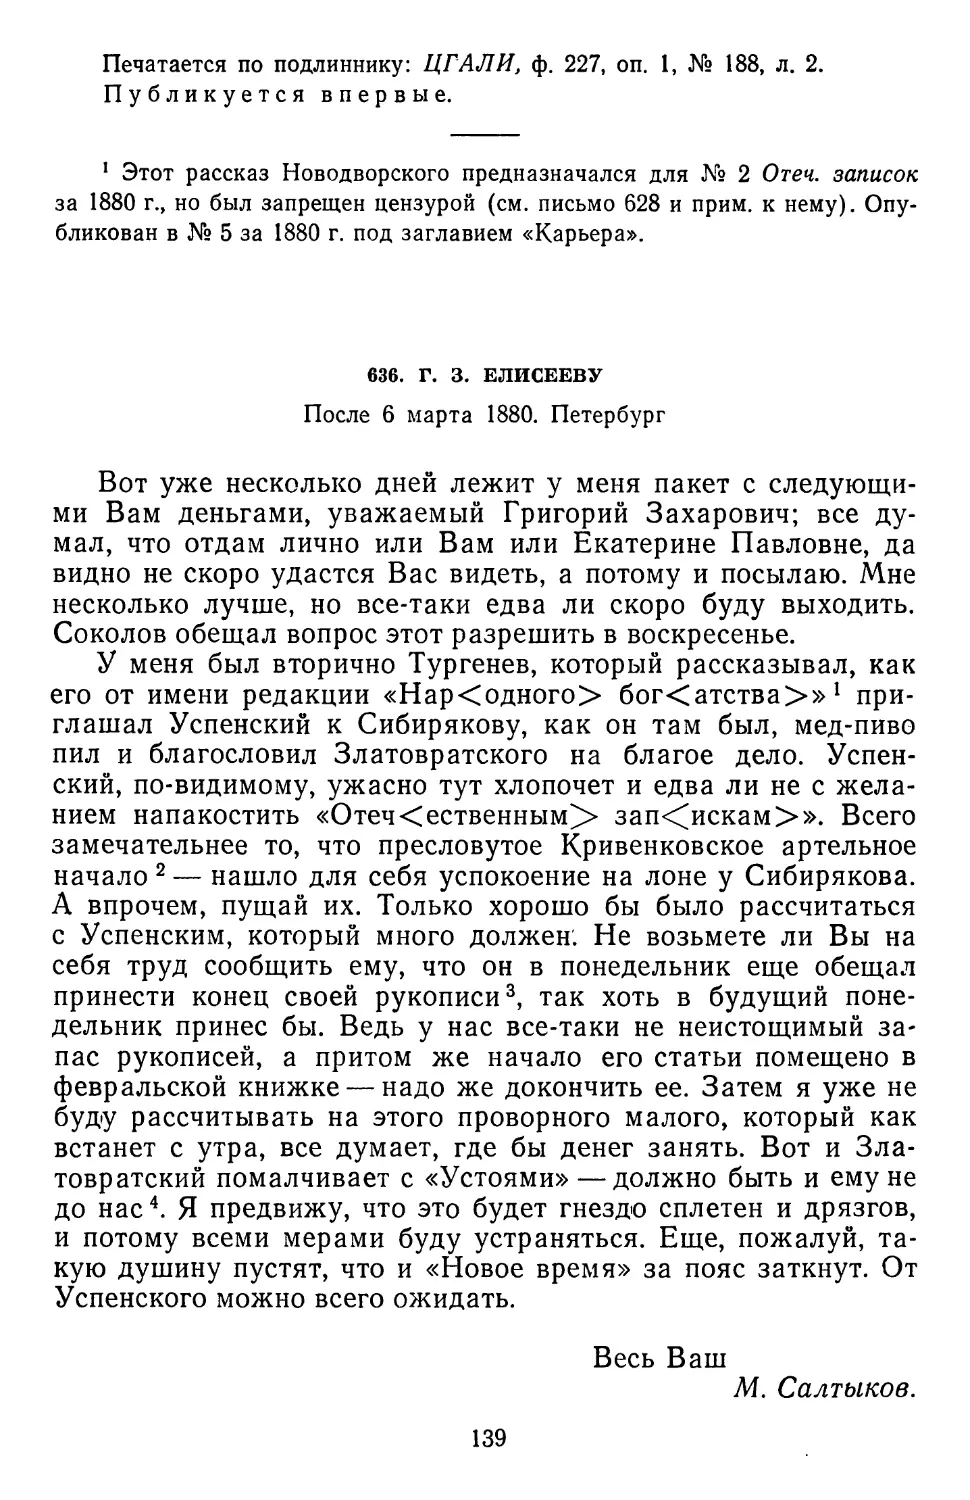 636.Г. 3. Елисееву. После 6 марта 1880. Петербург